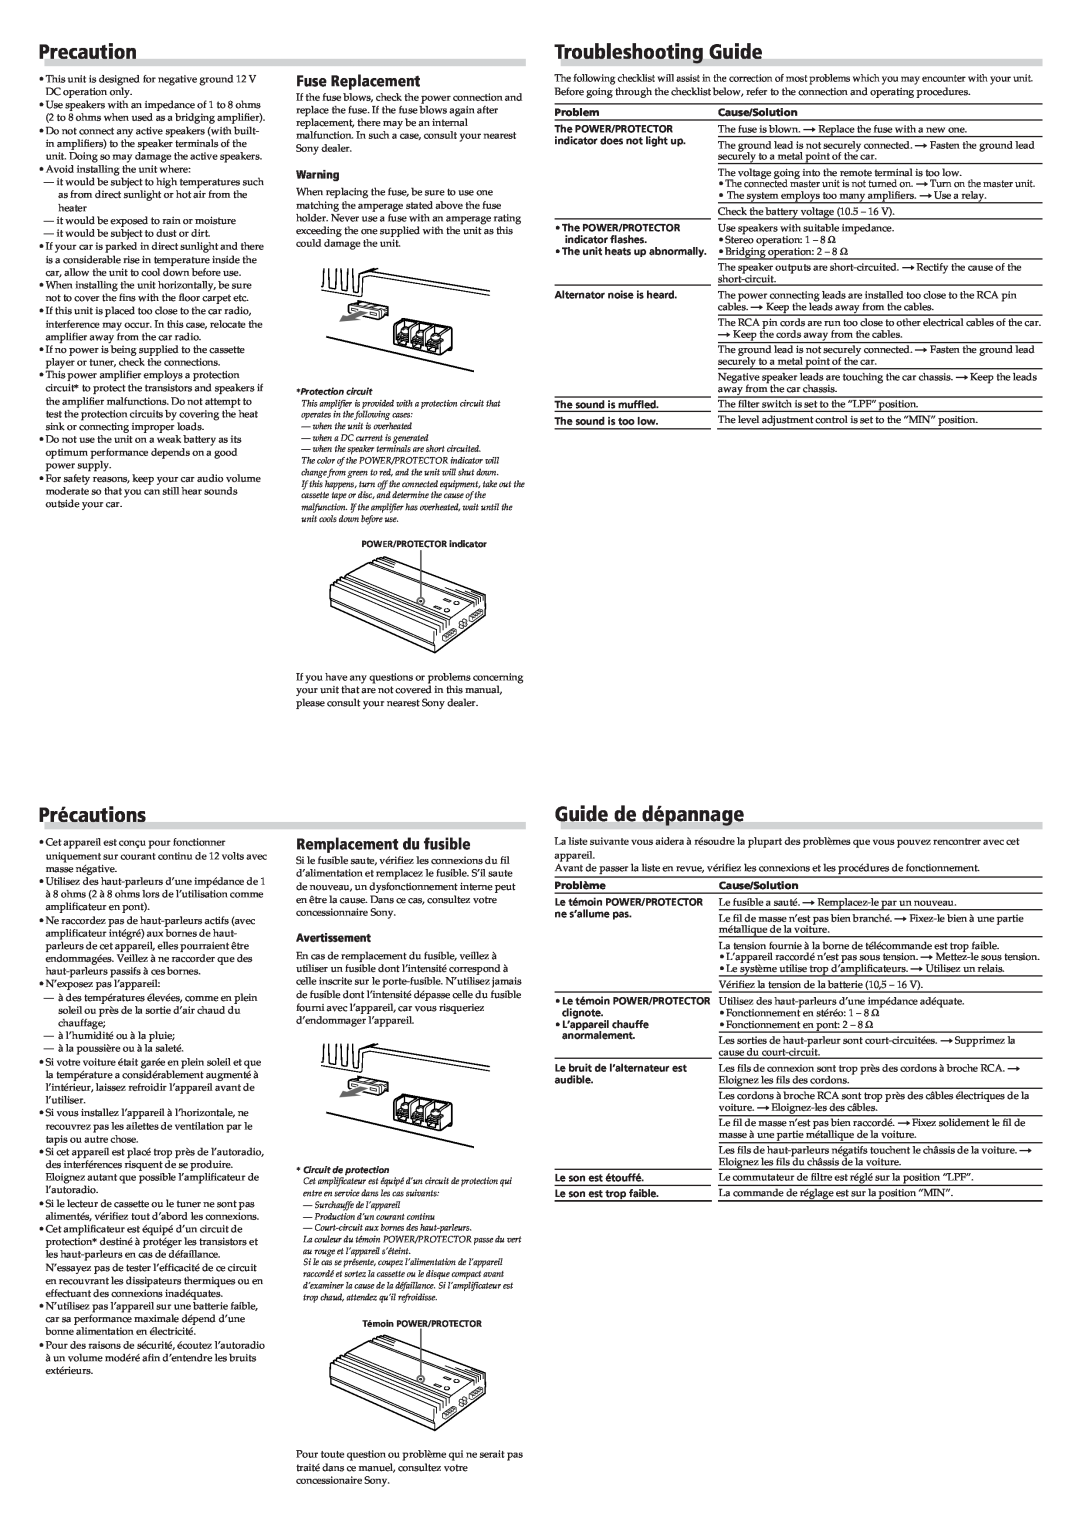 Sony XM-5046/3546 specifications Precaution, Troubleshooting Guide, Précautions, Guide de dépannage, Fuse Replacement 